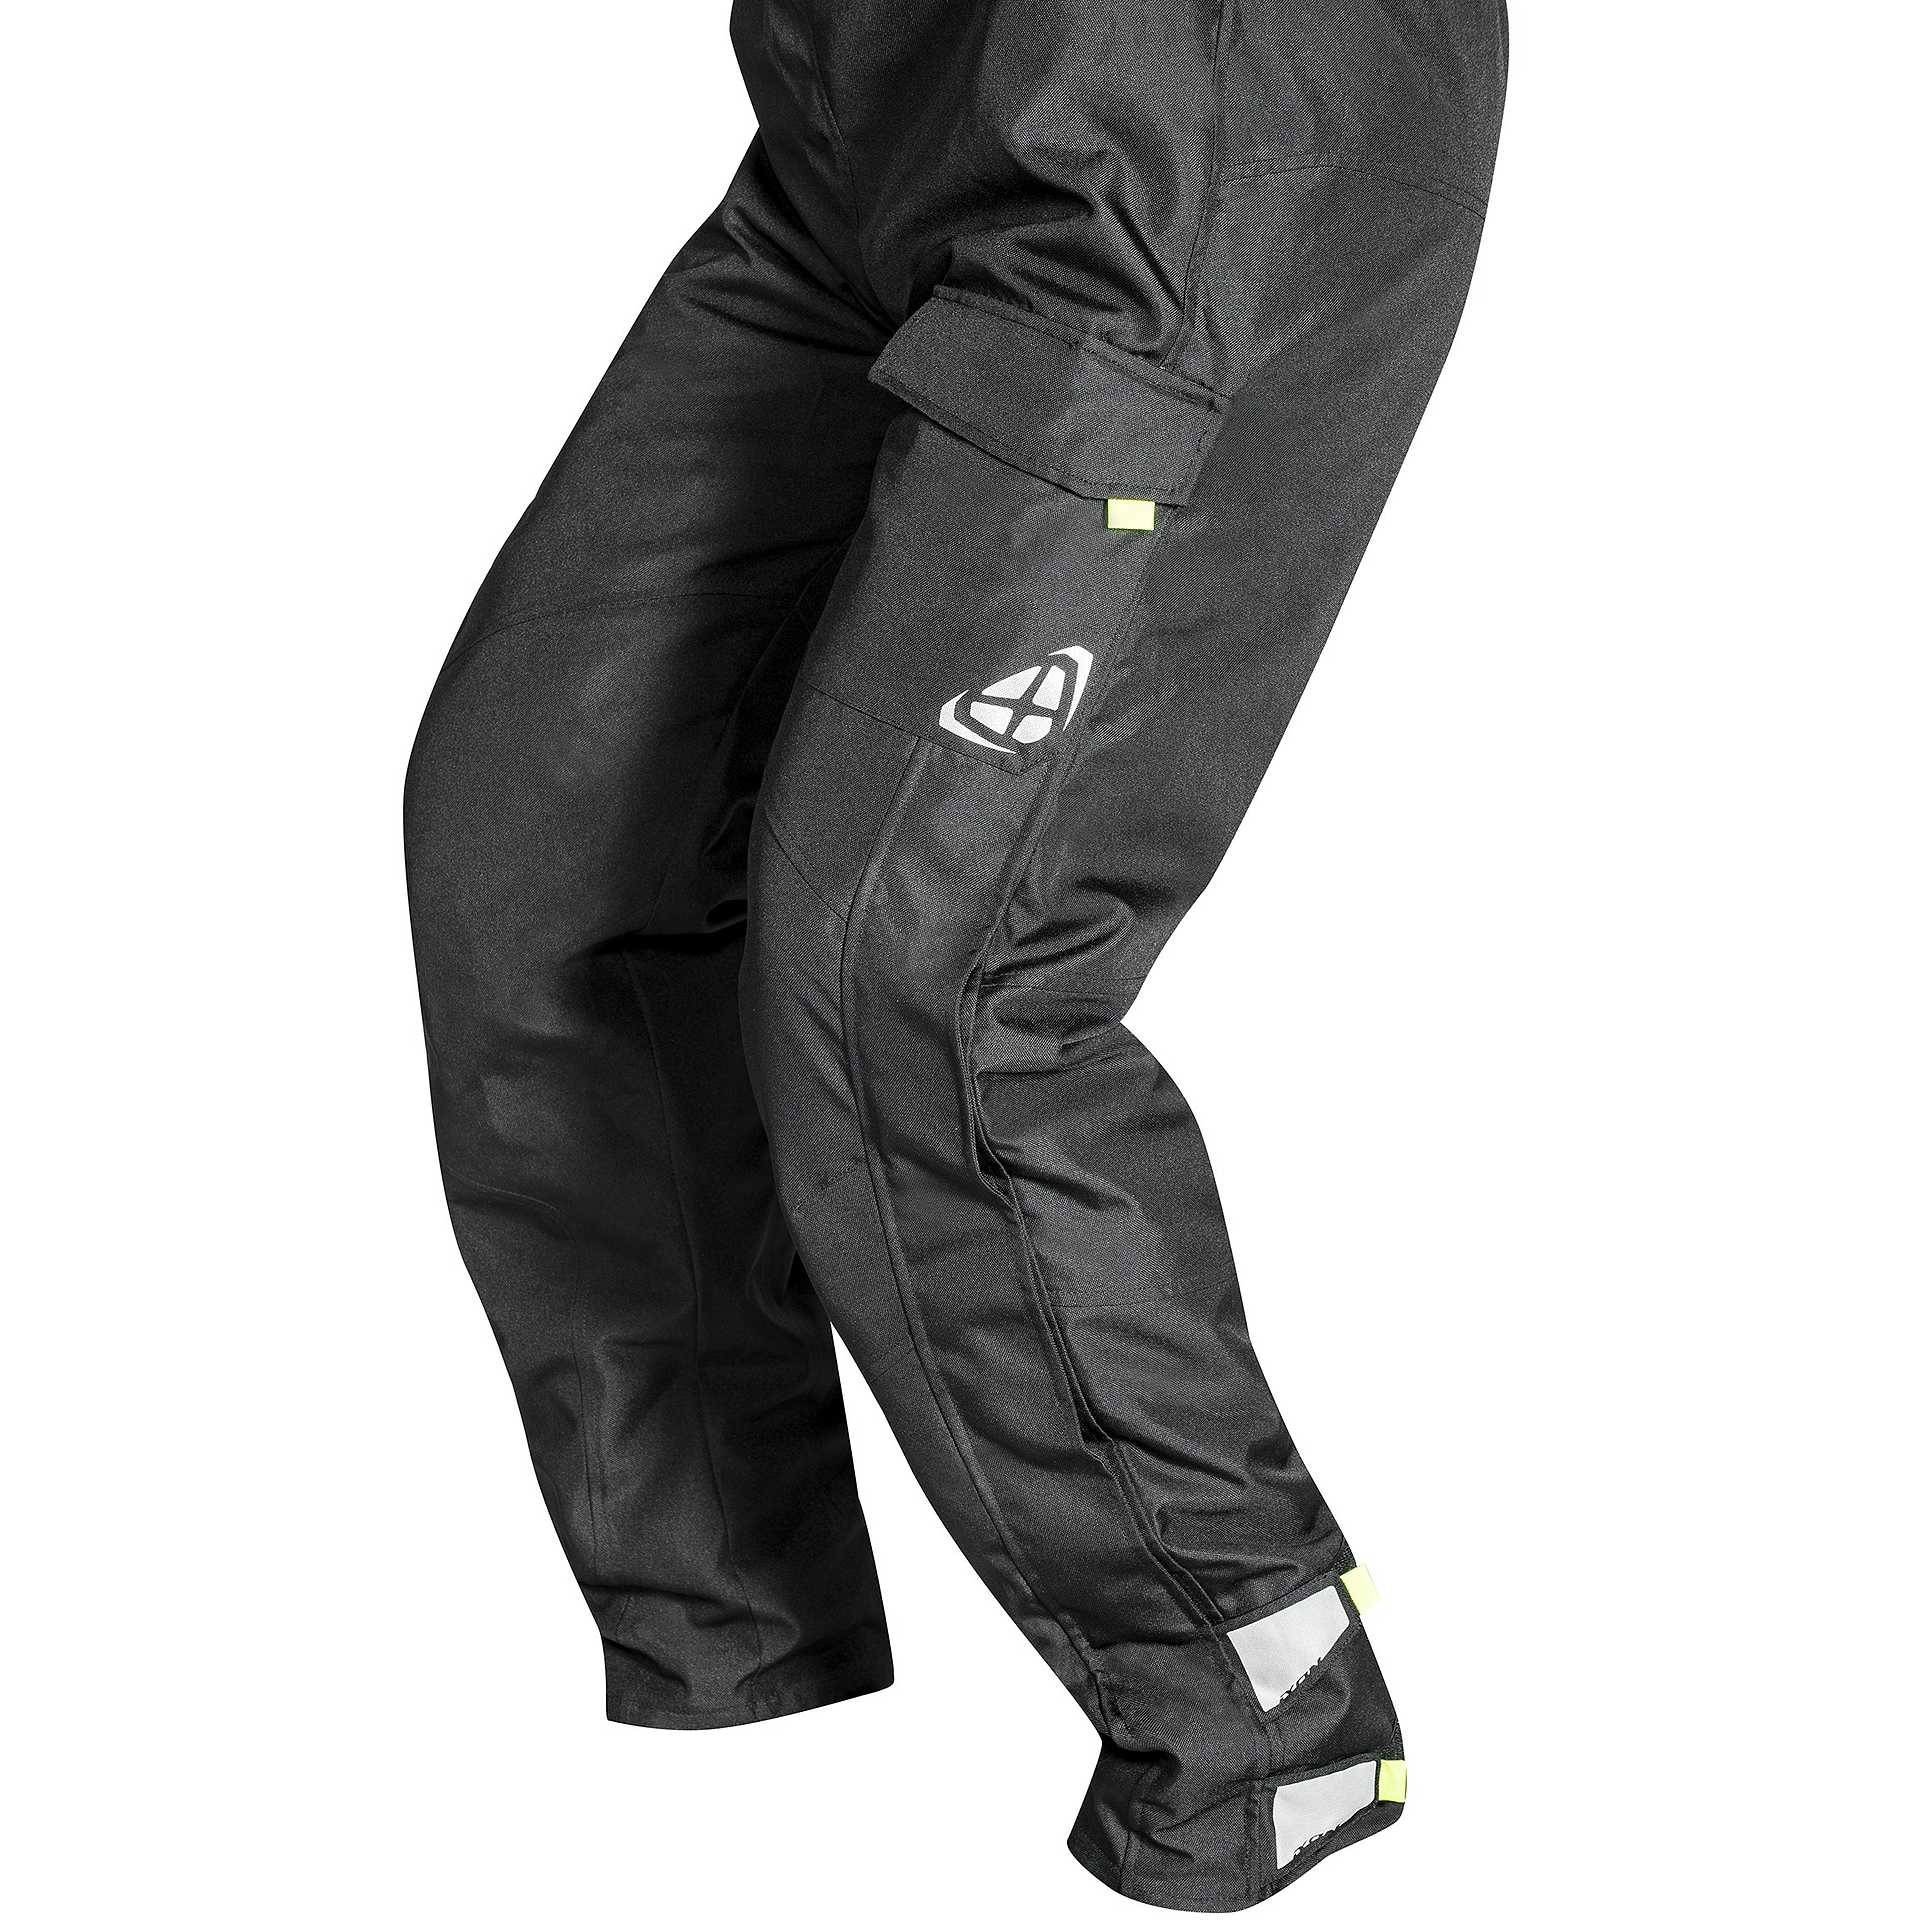 Magnifique pantalon surpantalon moto contre pluie IXON XL noir gris  excellent état - Équipement moto